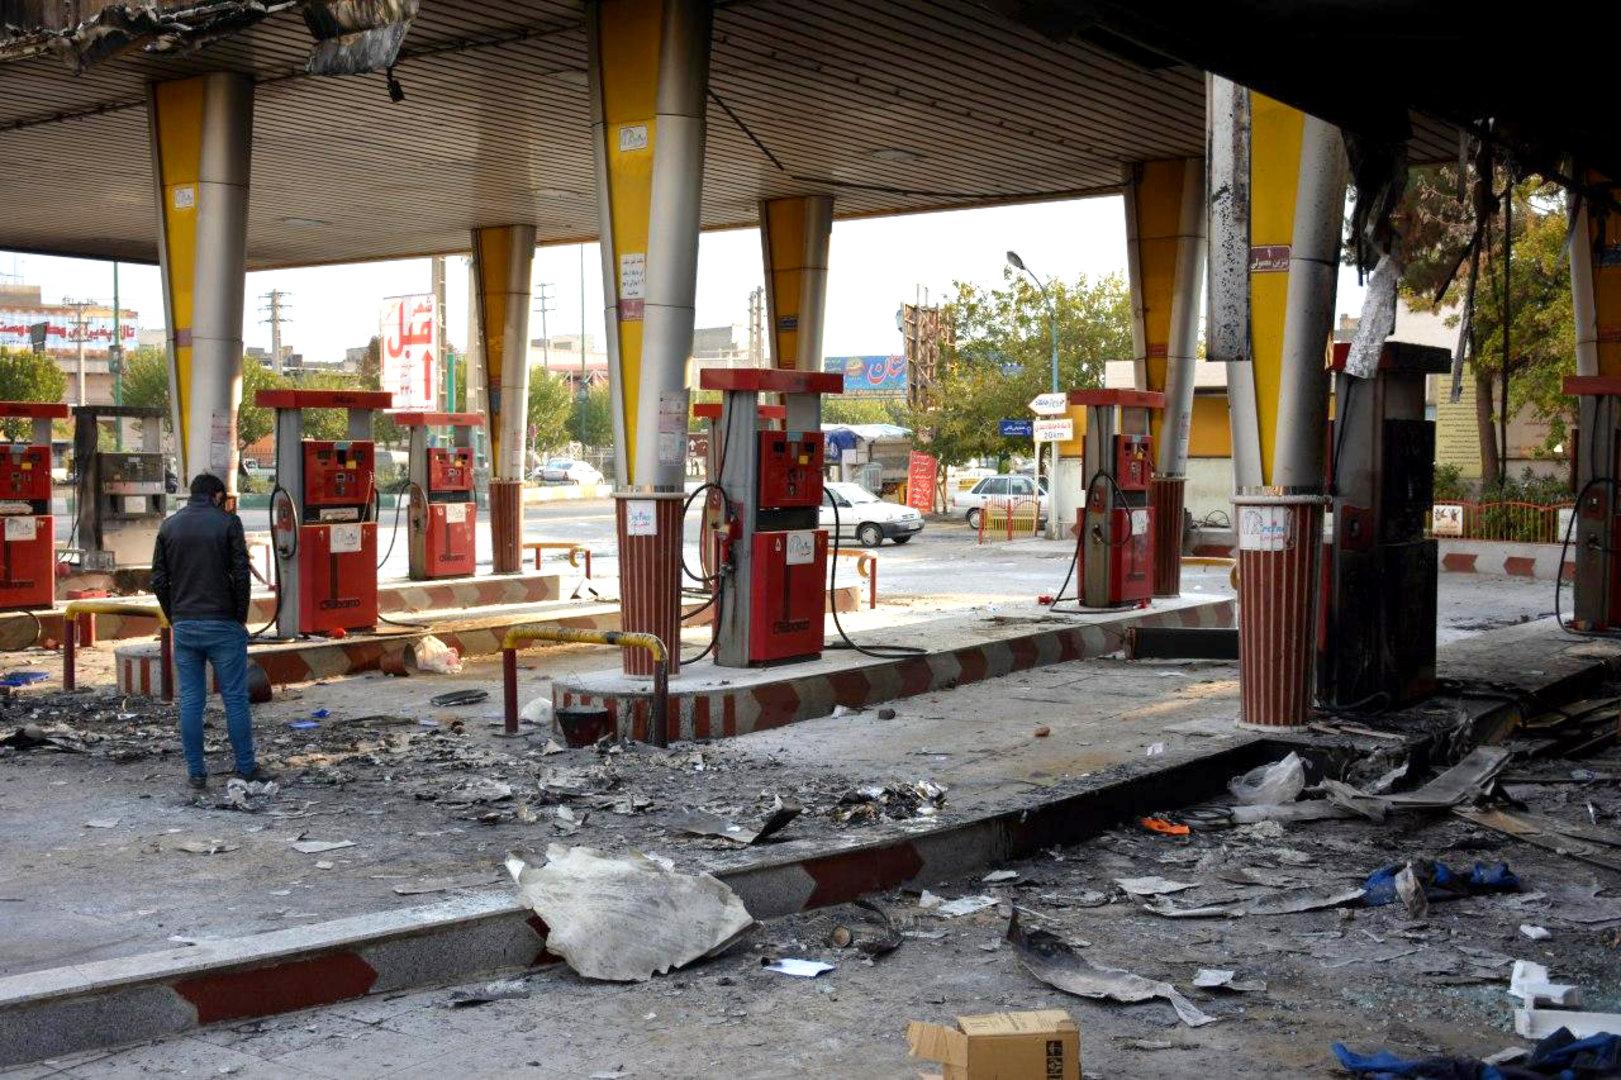 Sniper, Netzsperre, Tote: Geht es im Iran wirklich um den Benzinpreis?